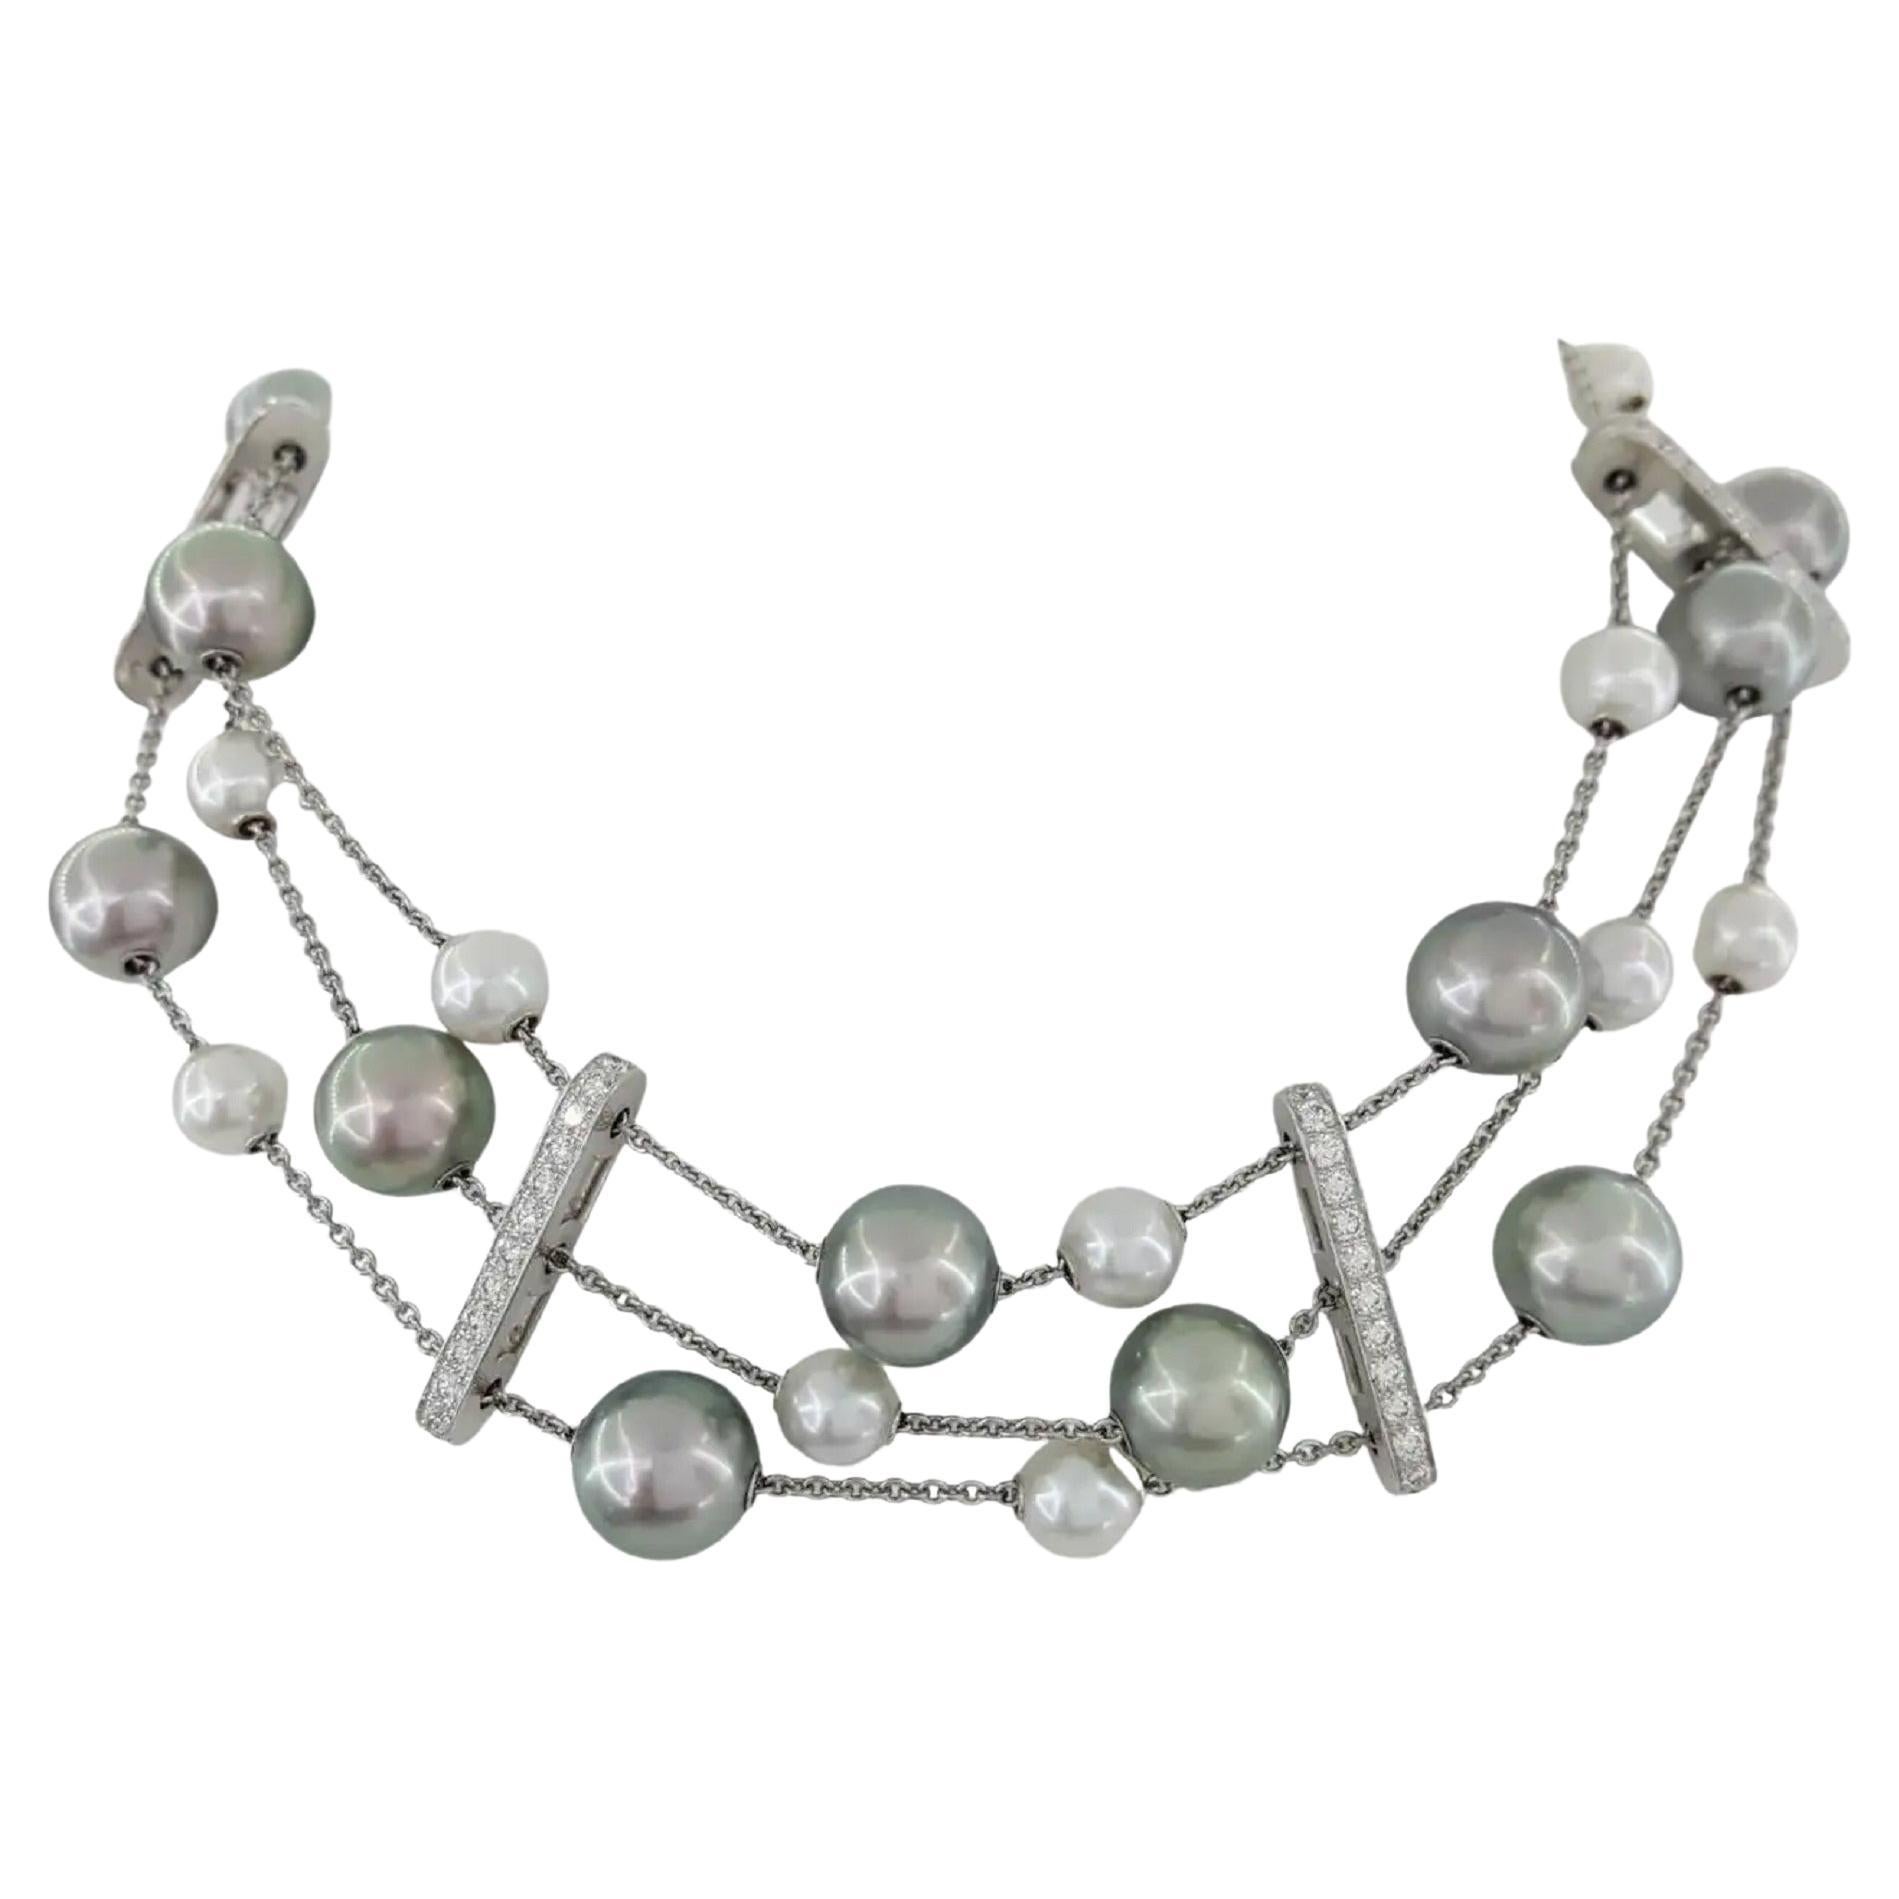 Mikimoto Halskette aus Silber und cremefarbener Perle mit 3 Strängen und Diamanten